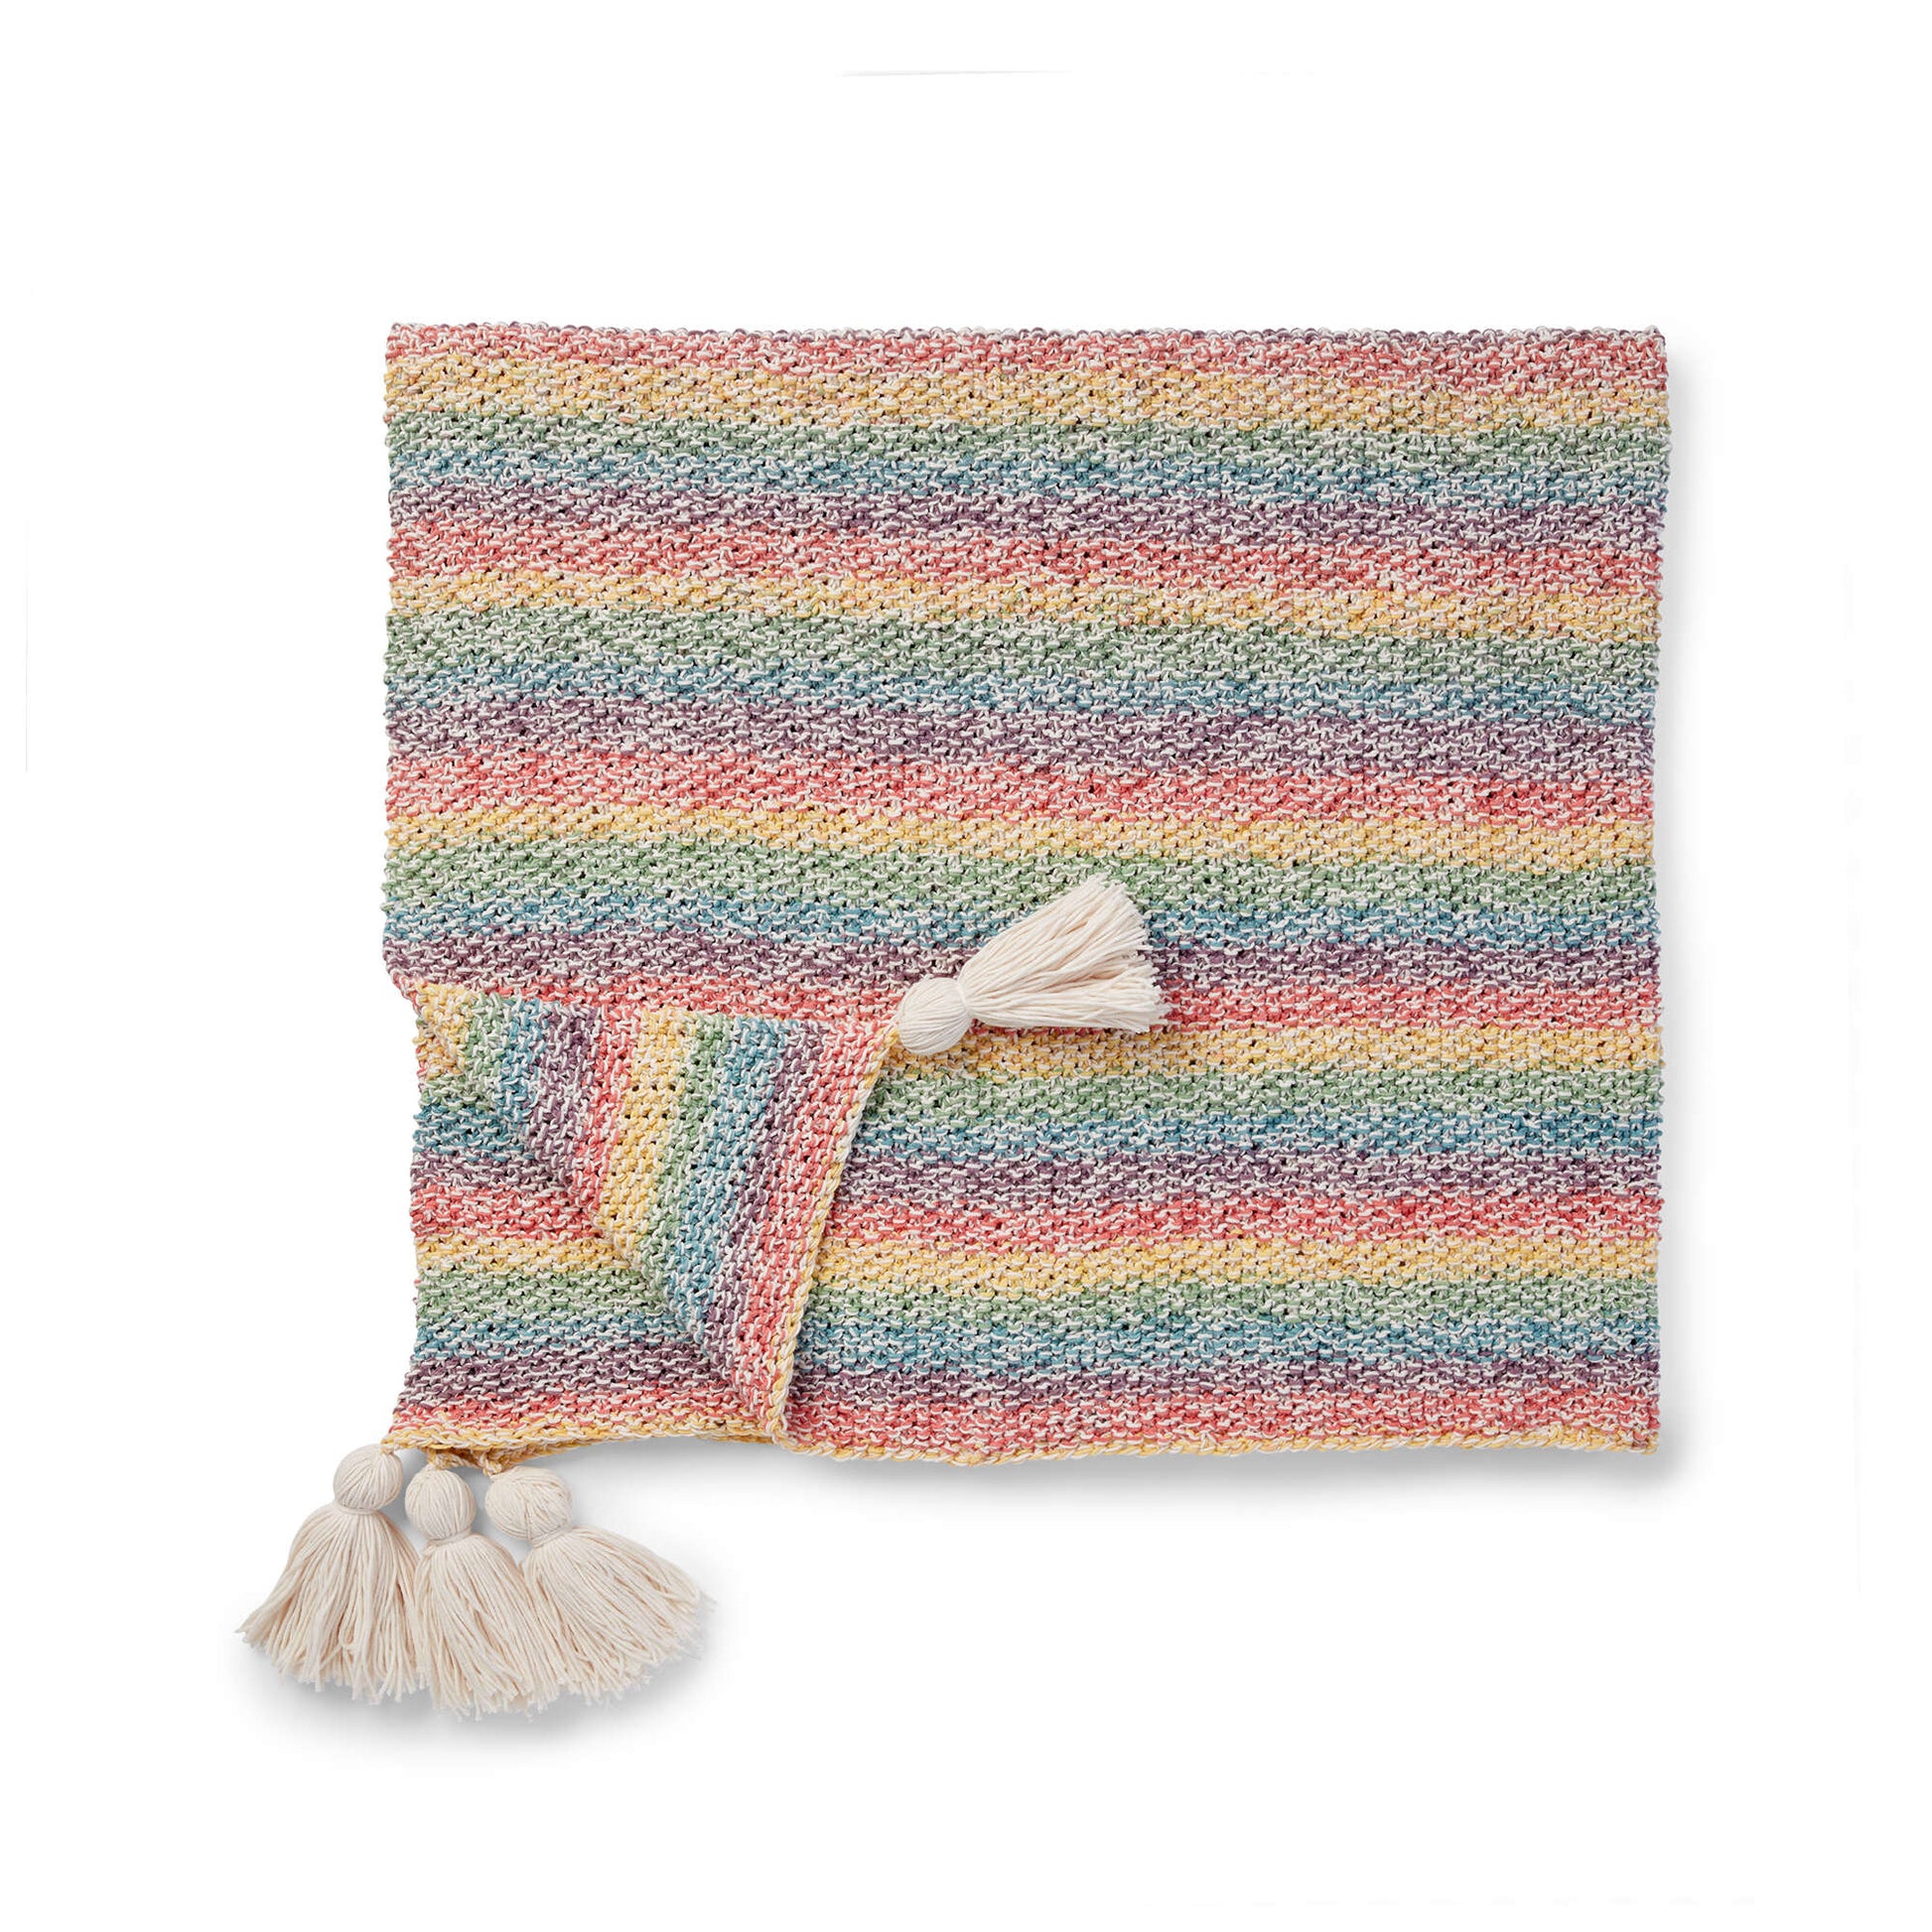 Free Caron Marled Knit Blanket Pattern